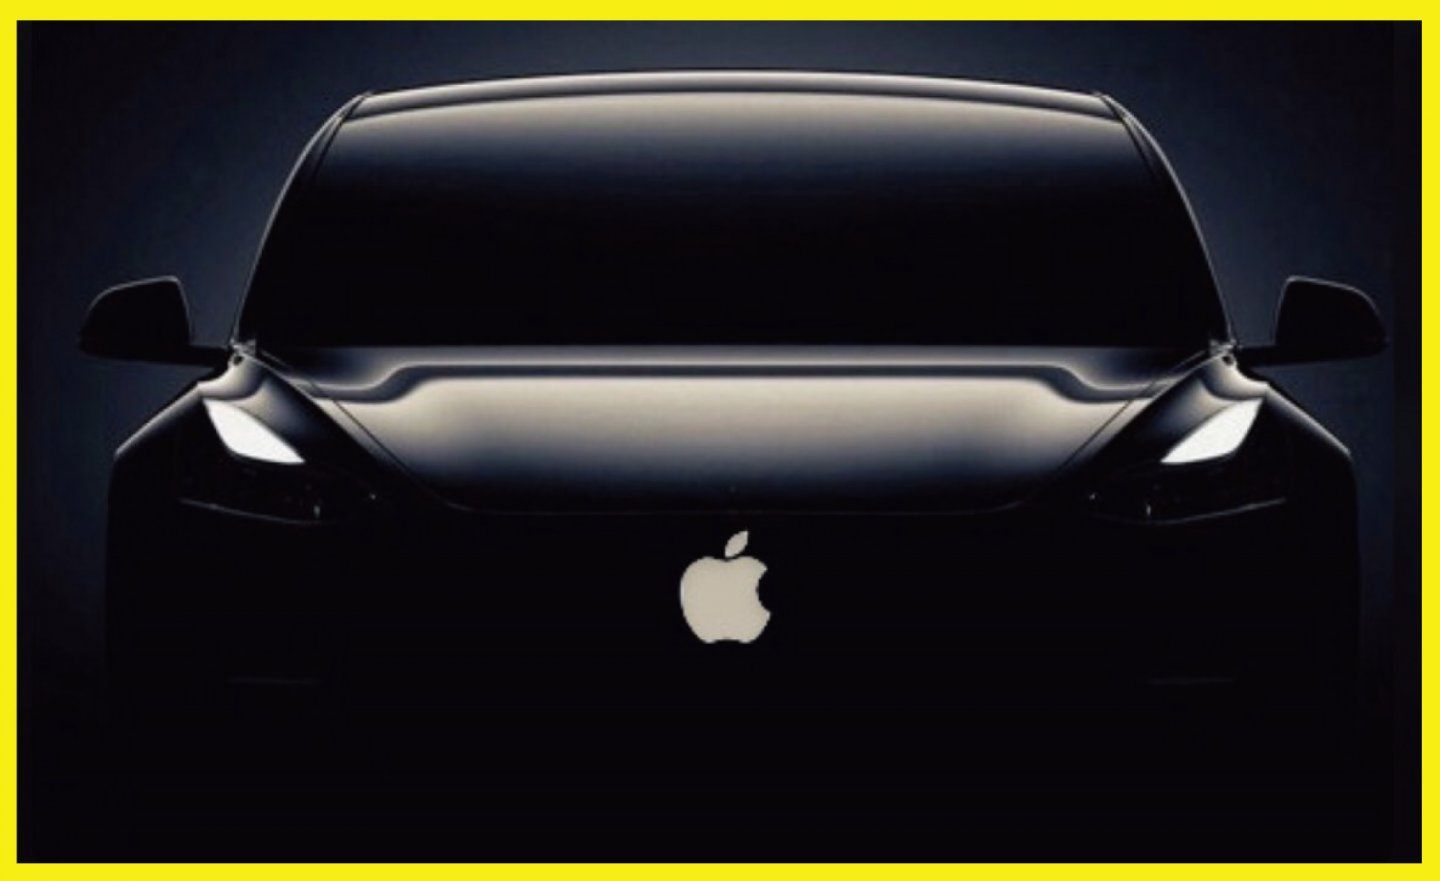 Apple Car 蘋果汽車最快 2028 年上市，但自動駕駛系統等級將只有 Level 2+